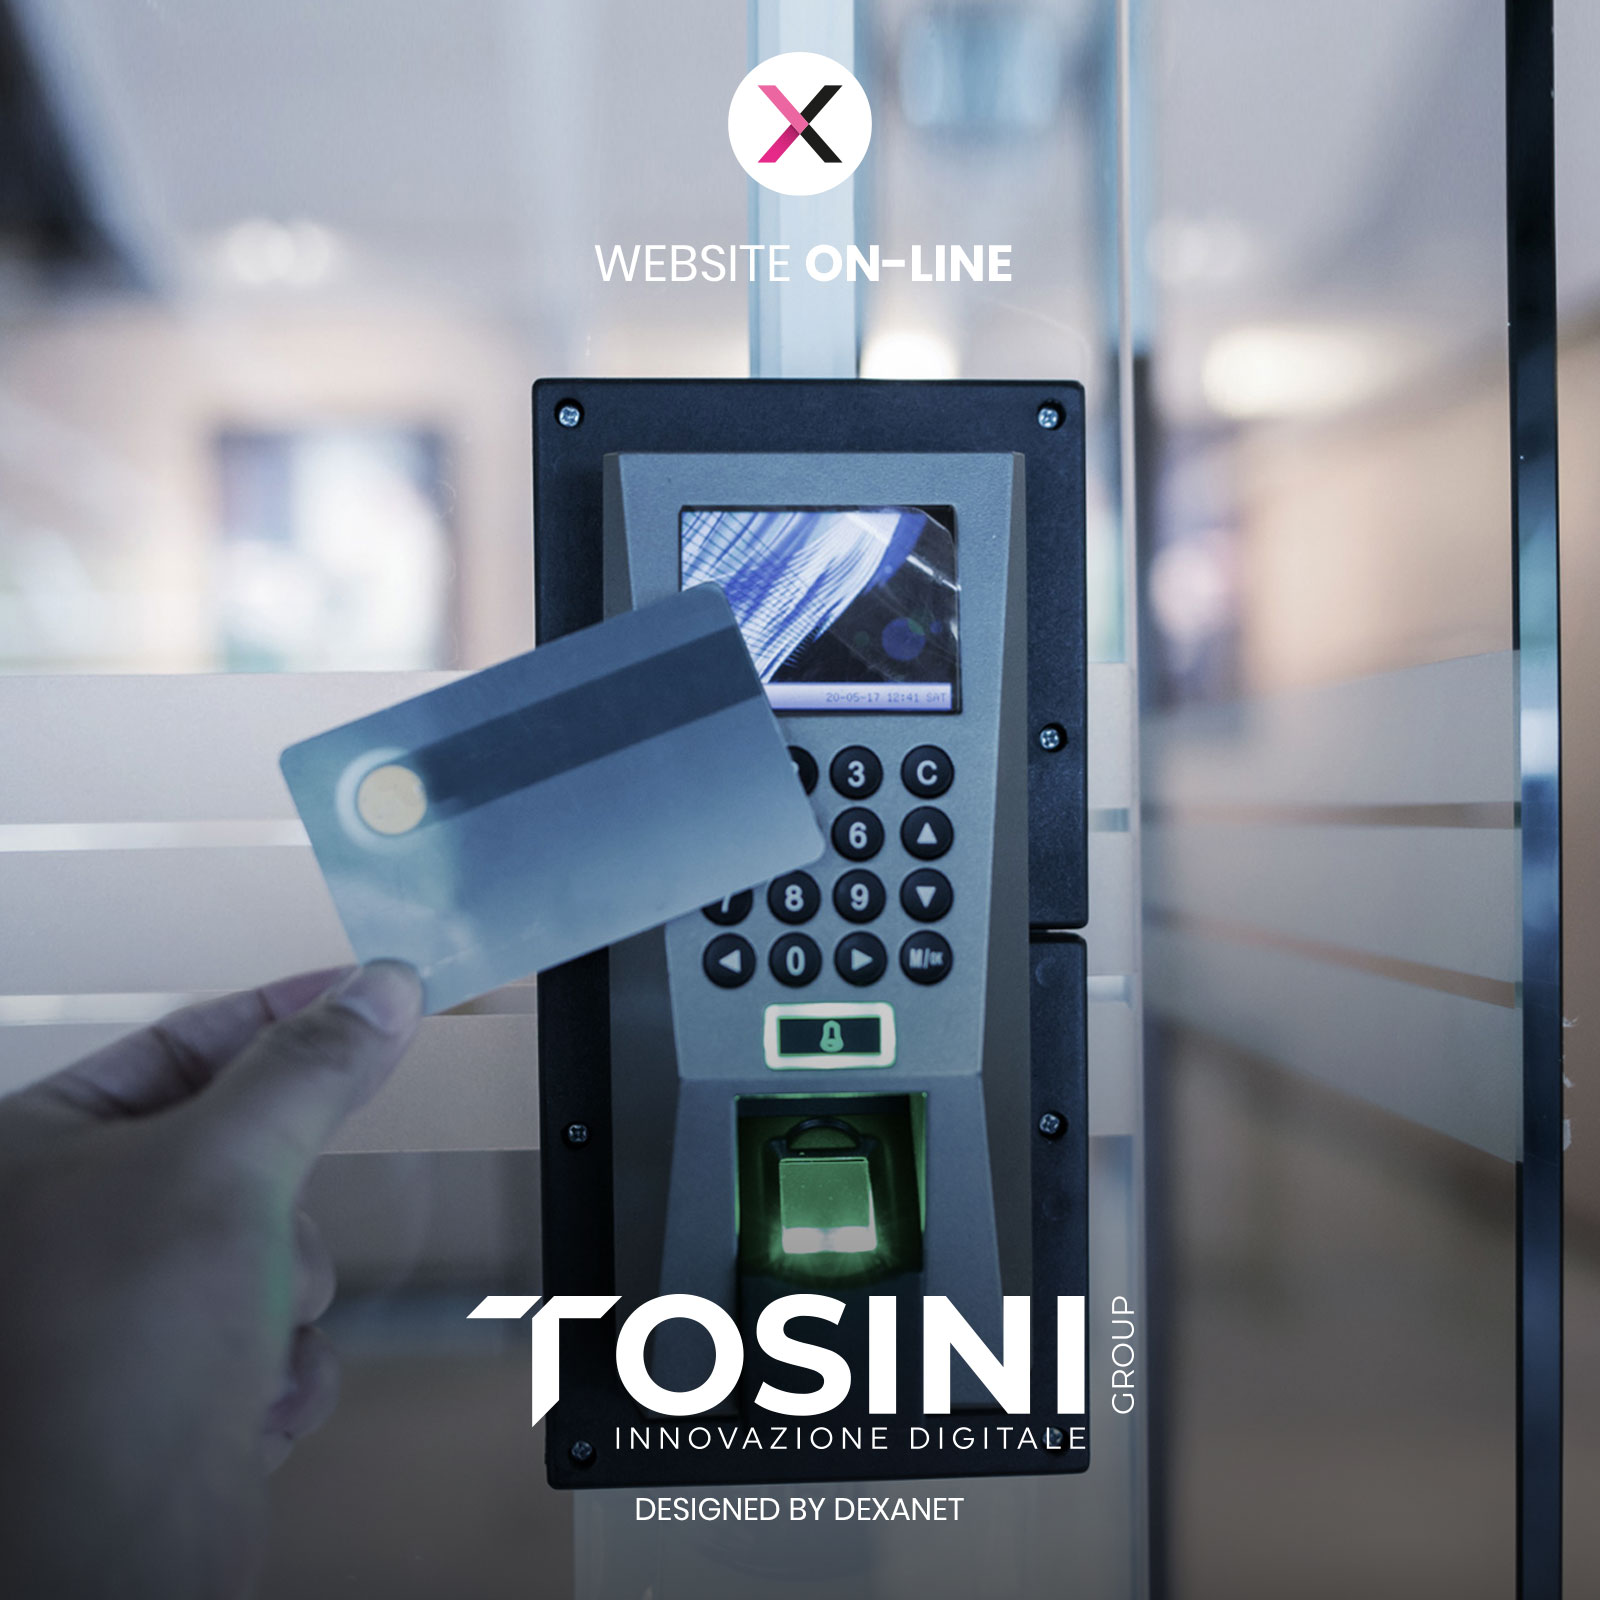 È tutto sotto controllo sul nuovo sito di Tosini Group.